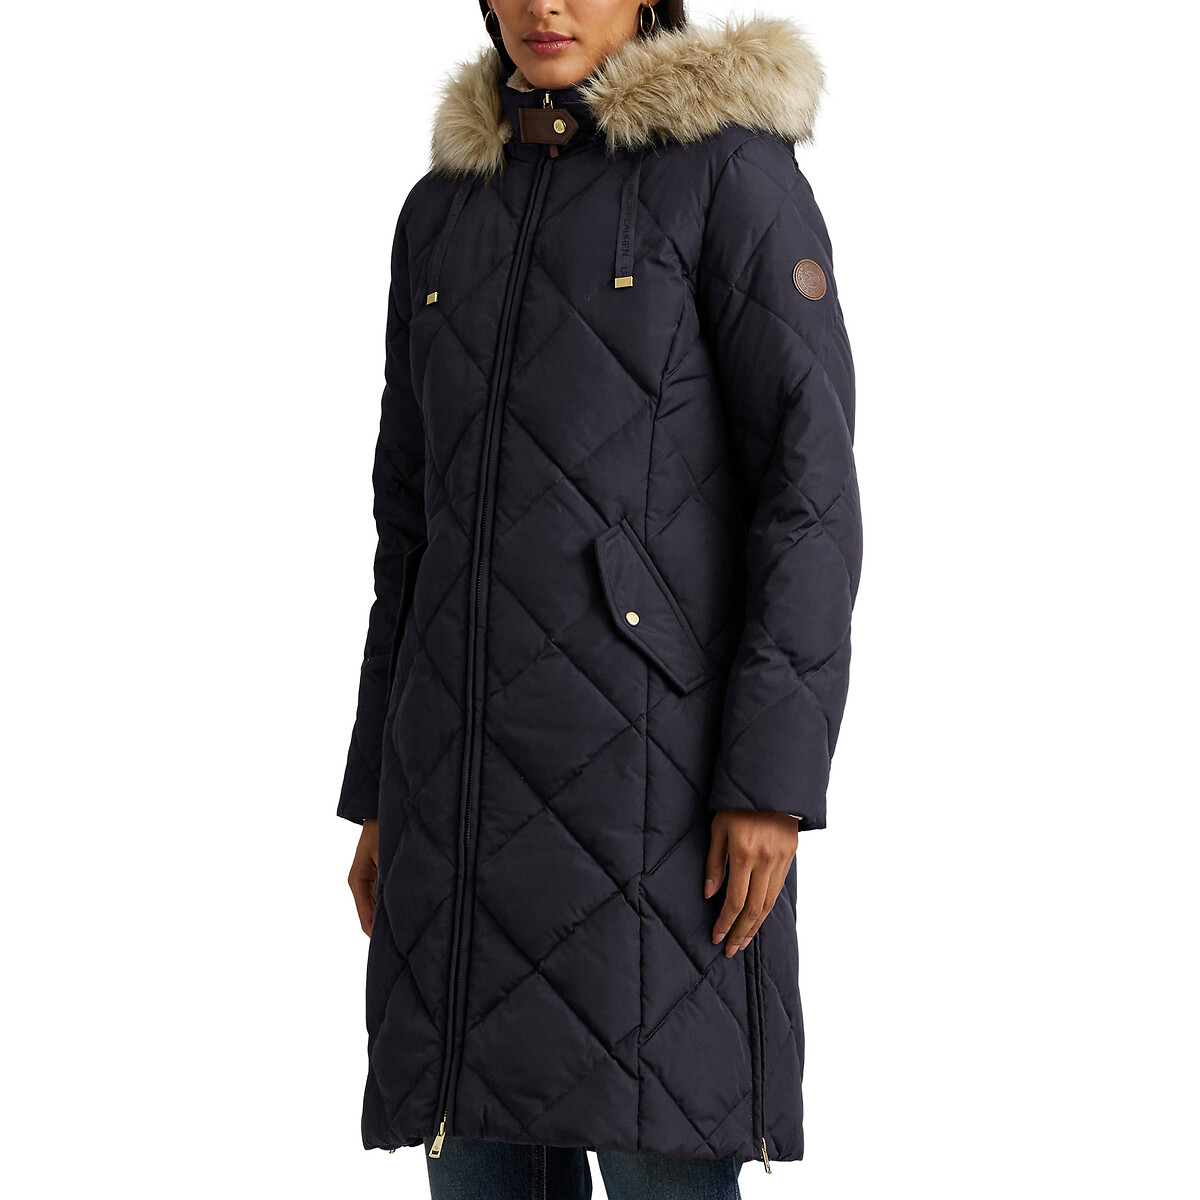 Куртка стеганая средней длины с капюшоном с оторочкой мехом XS синий куртка стеганая утепленная с капюшоном средней длины 10 лет 138 см синий